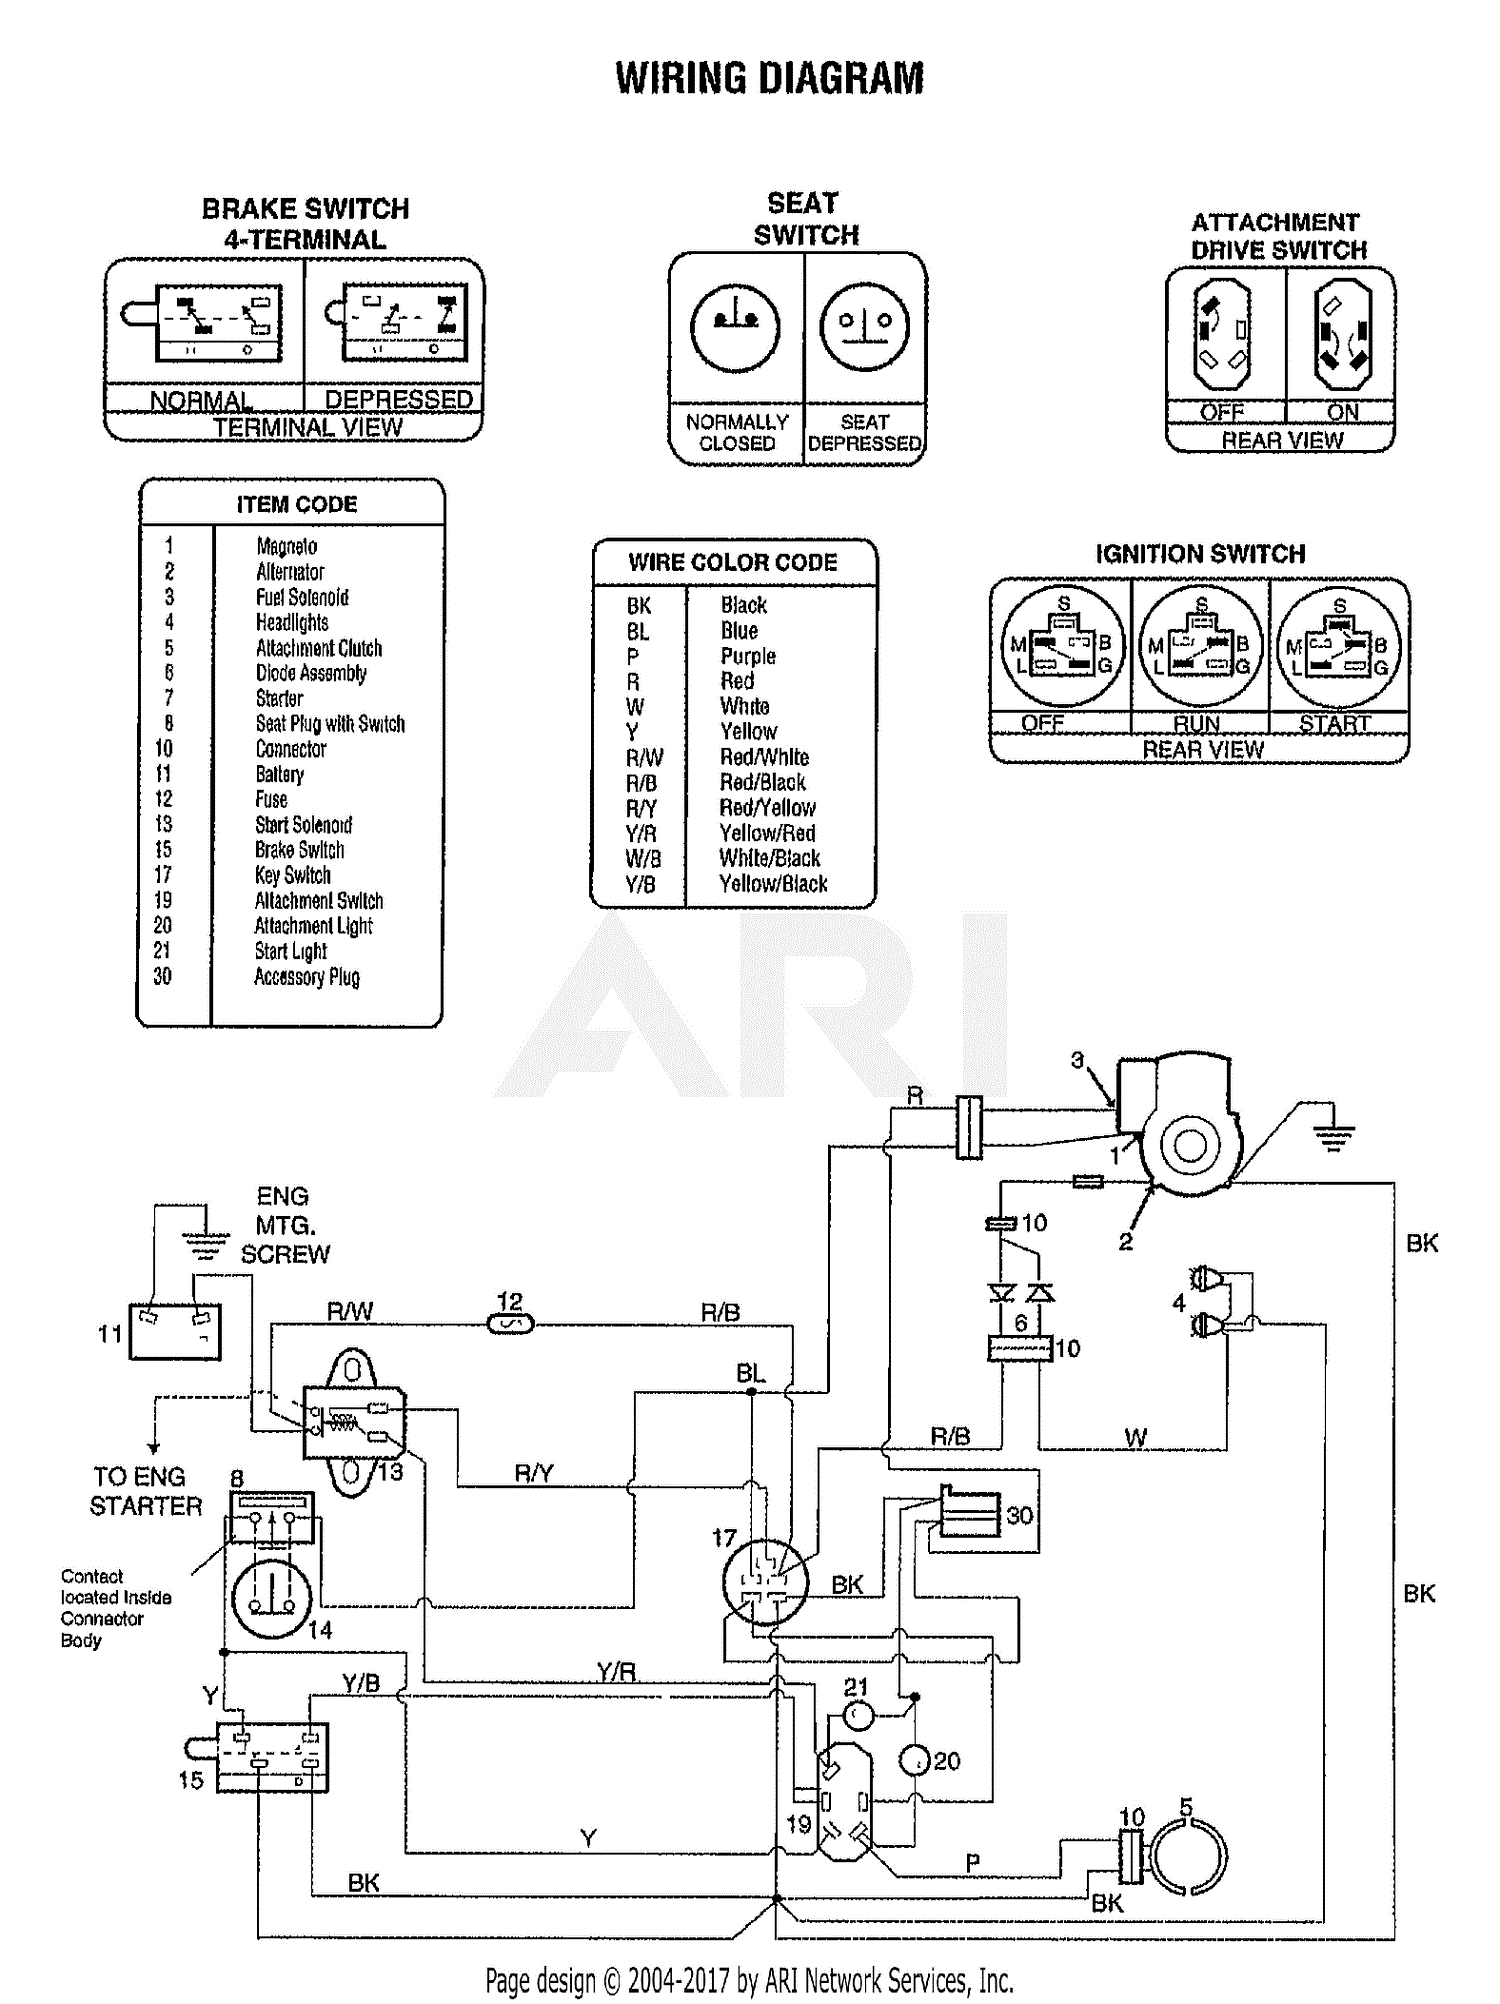 Wrg 2199 Lawn Mower Wire Diagram